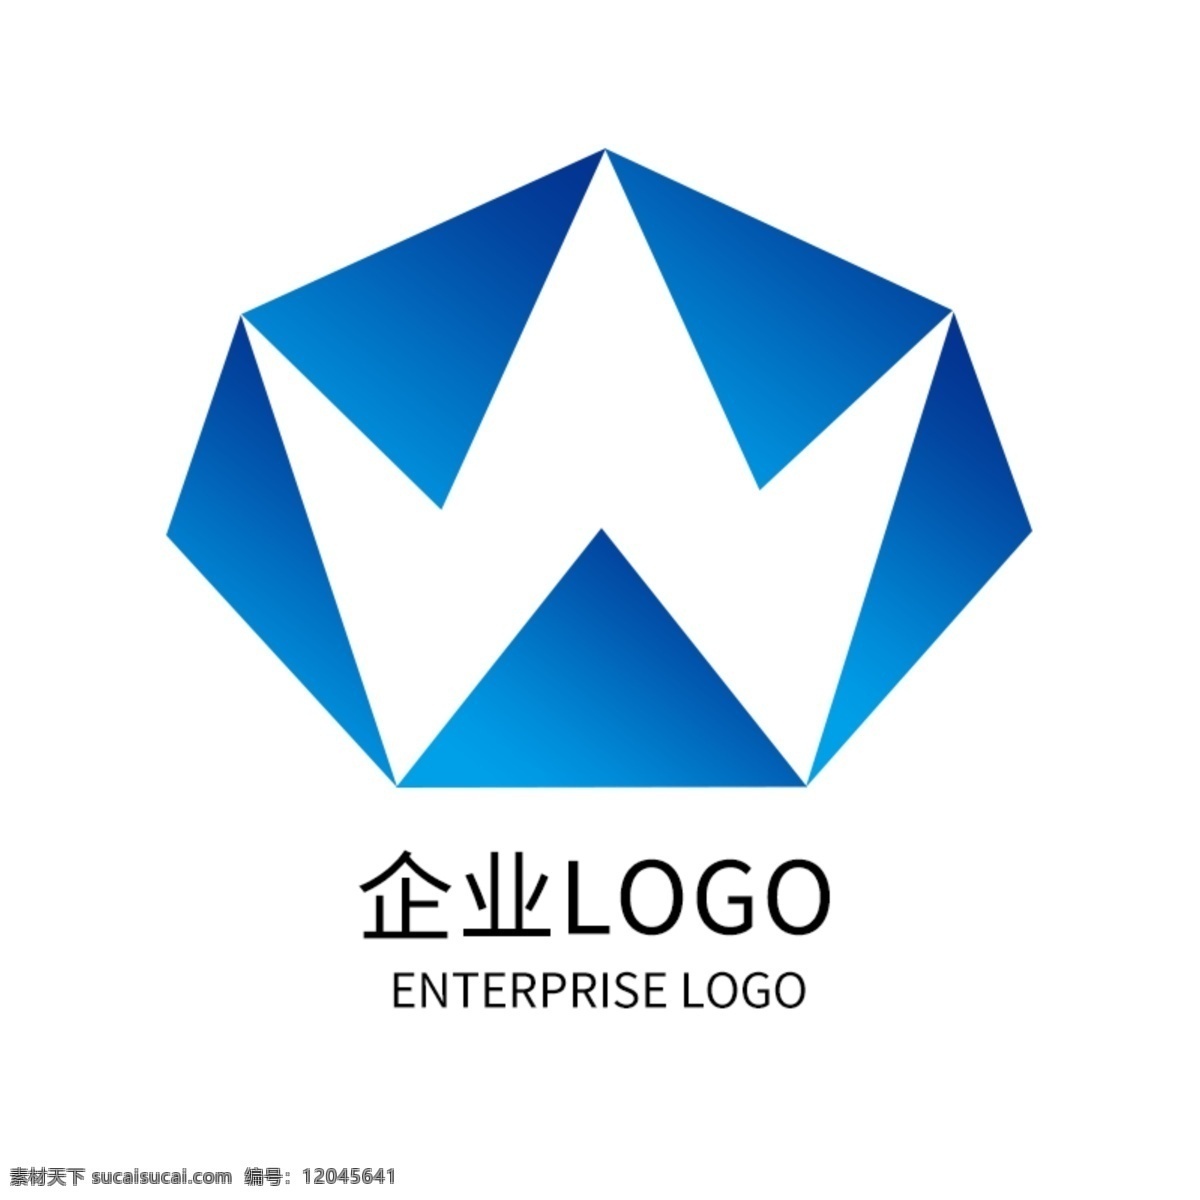 蓝色 科技 公司 企业 标志 字母 wlogo 蓝色渐变 logo 标志设计 logo设计 w 众筹